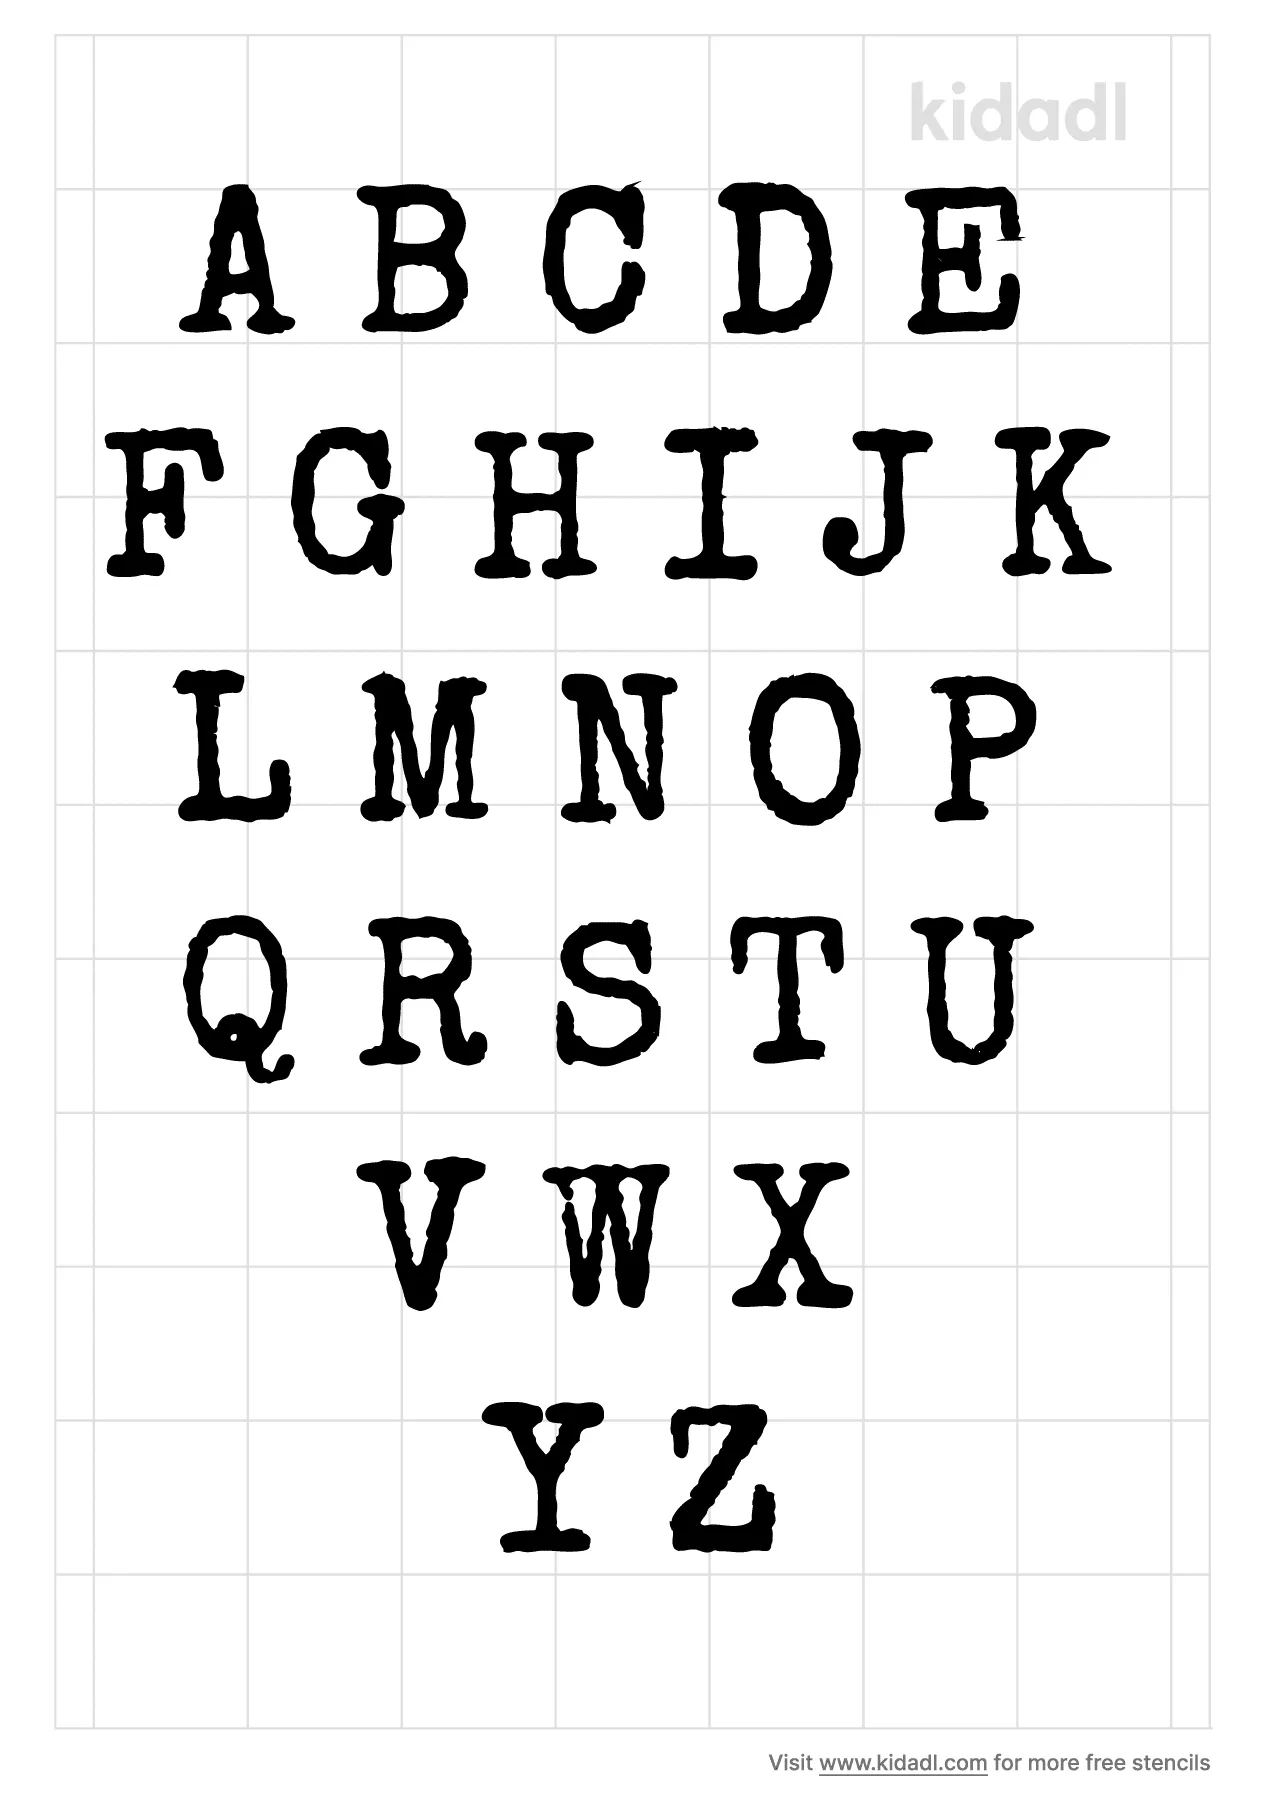 free-printable-bubble-letter-alphabet-stencils-freebie-finding-mom-free-printable-bubble